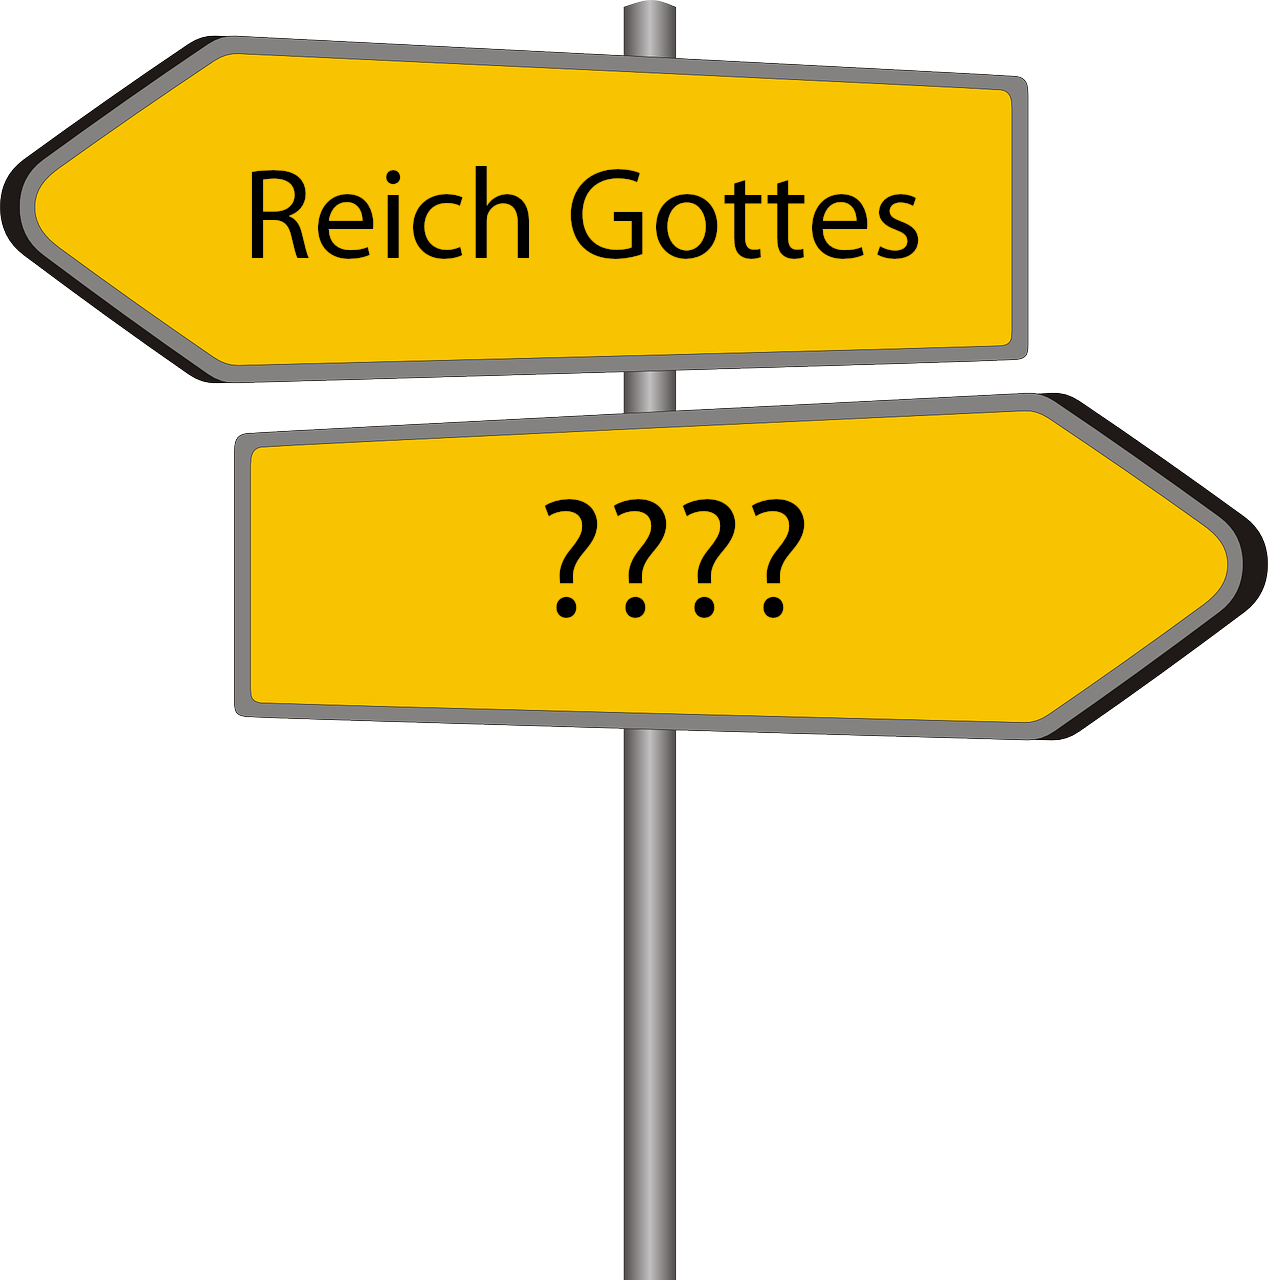 M famgo FZ Reich Gottes directory 230724 pixabay